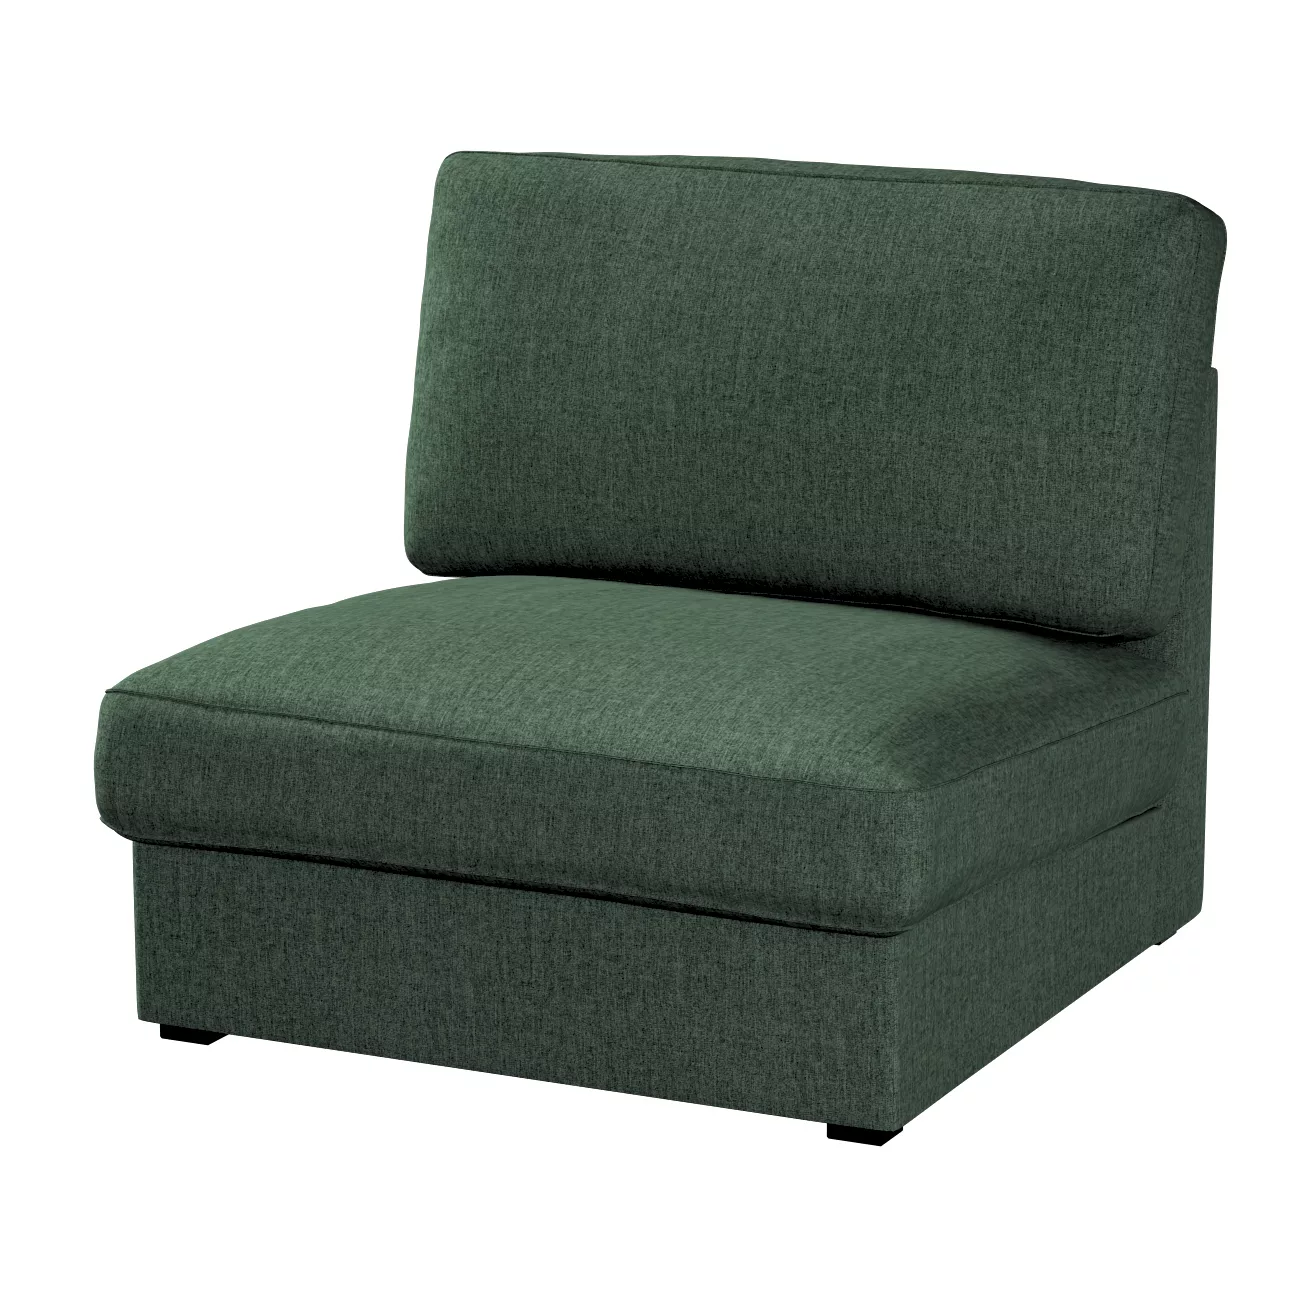 Bezug für Kivik Sessel nicht ausklappbar, dunkelgrün, Bezug für Sessel Kivi günstig online kaufen